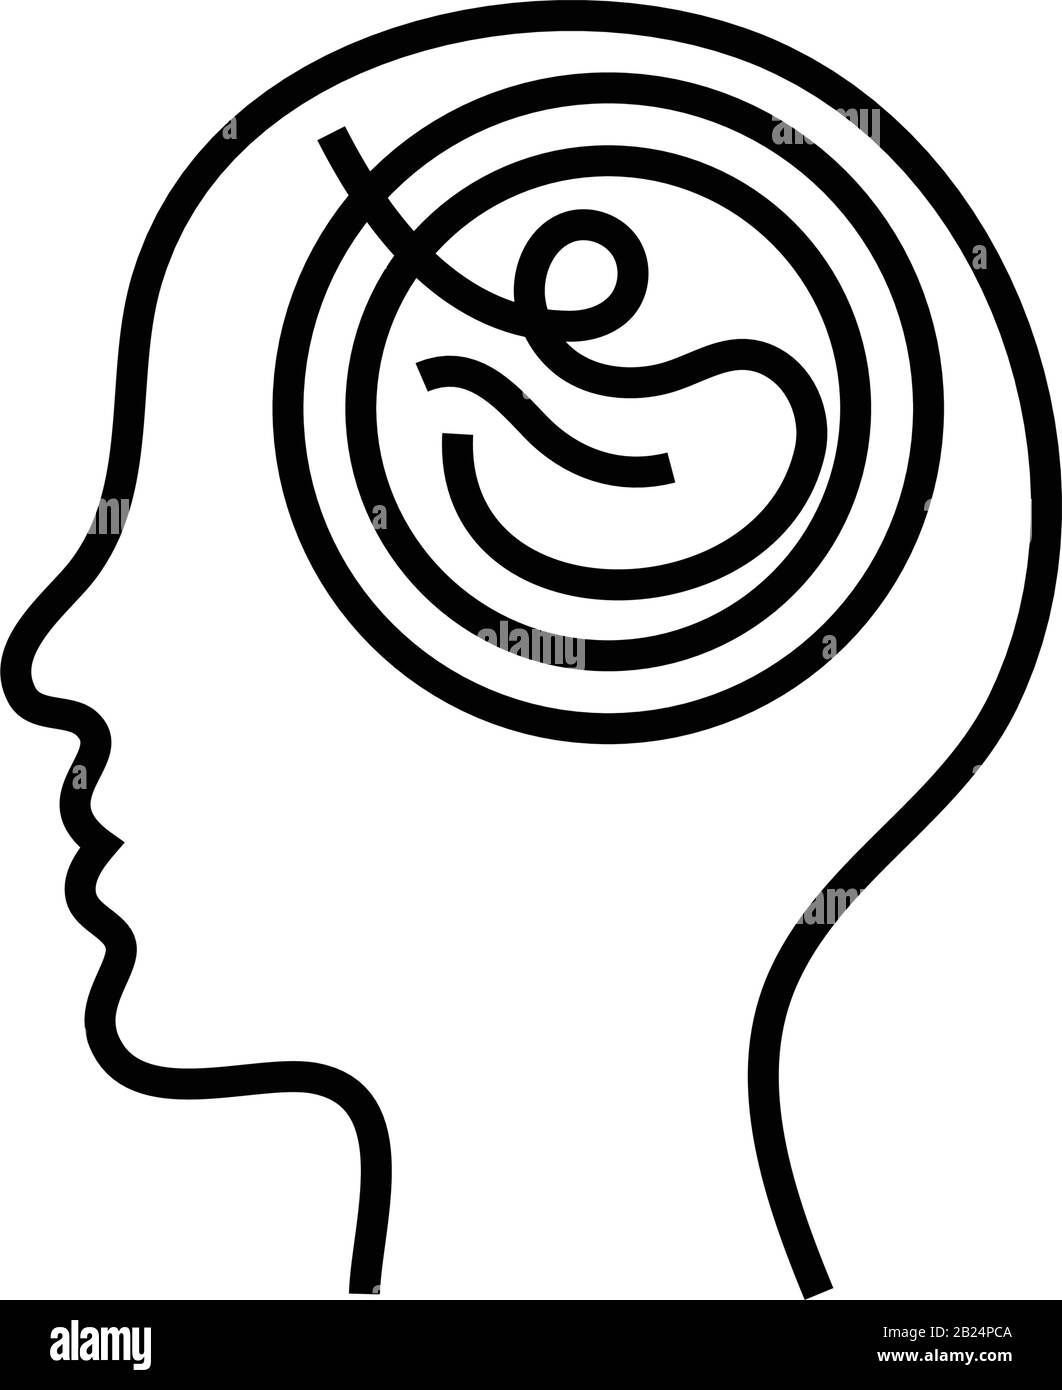 Icona della linea mentale produttiva, simbolo concettuale, illustrazione vettoriale del contorno, simbolo lineare. Illustrazione Vettoriale